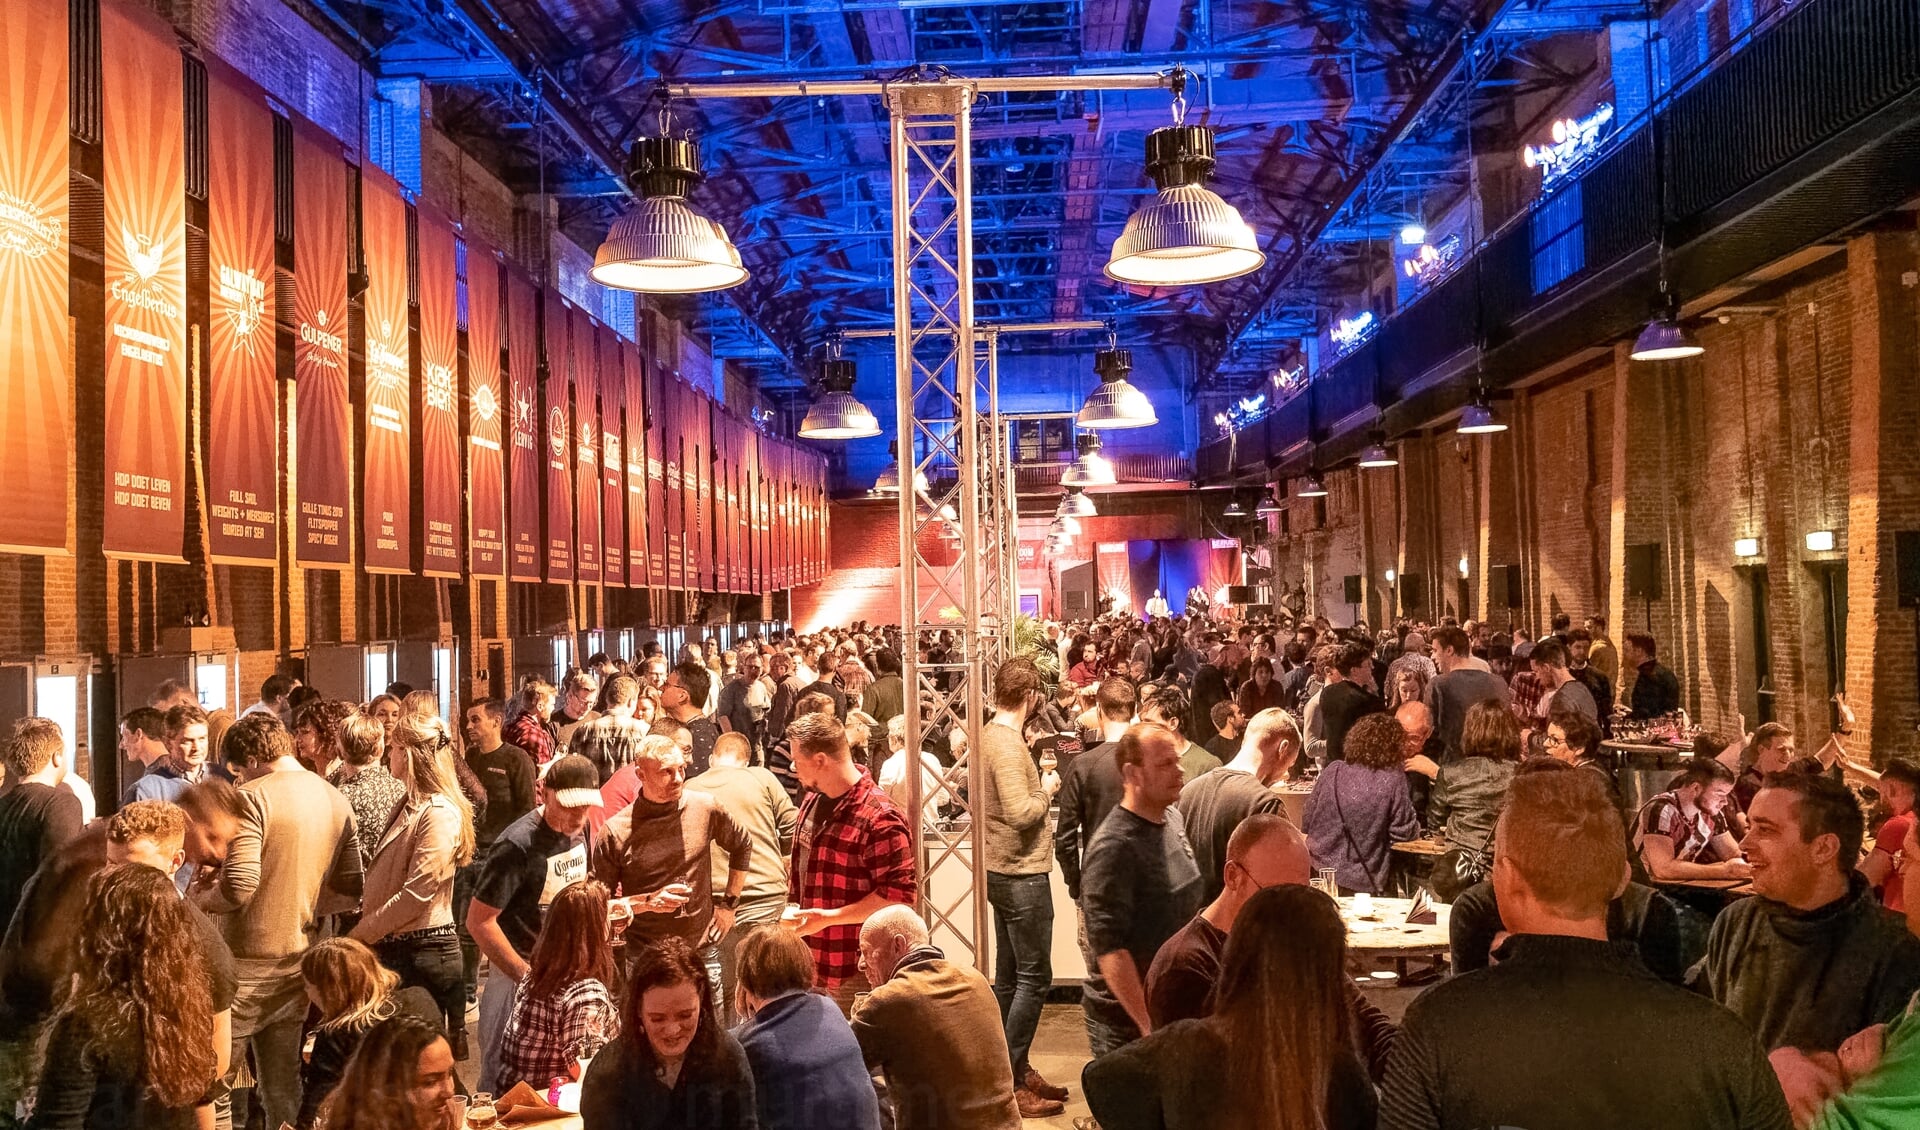 Het bierkade festival trok in 2020 zo'n 1200 bezoekers.